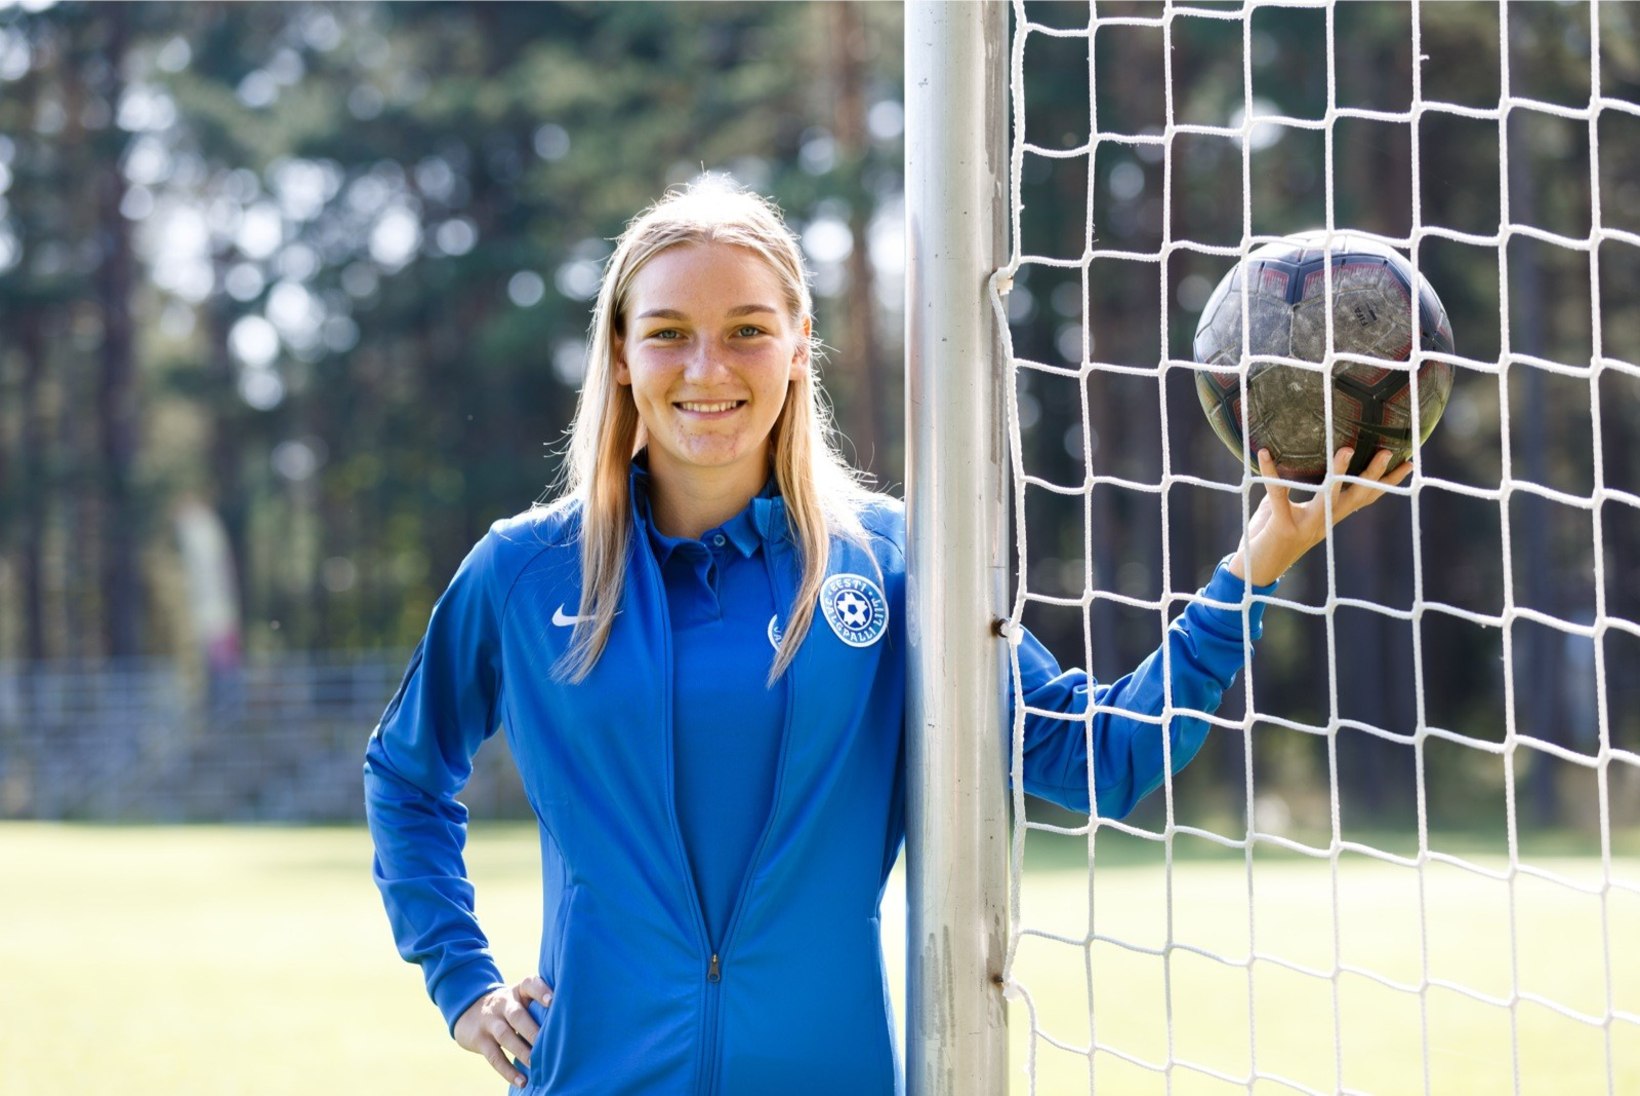 AJALOOLINE SAMM: Flora hakkab esimest korda tasustama naisjalgpallurit